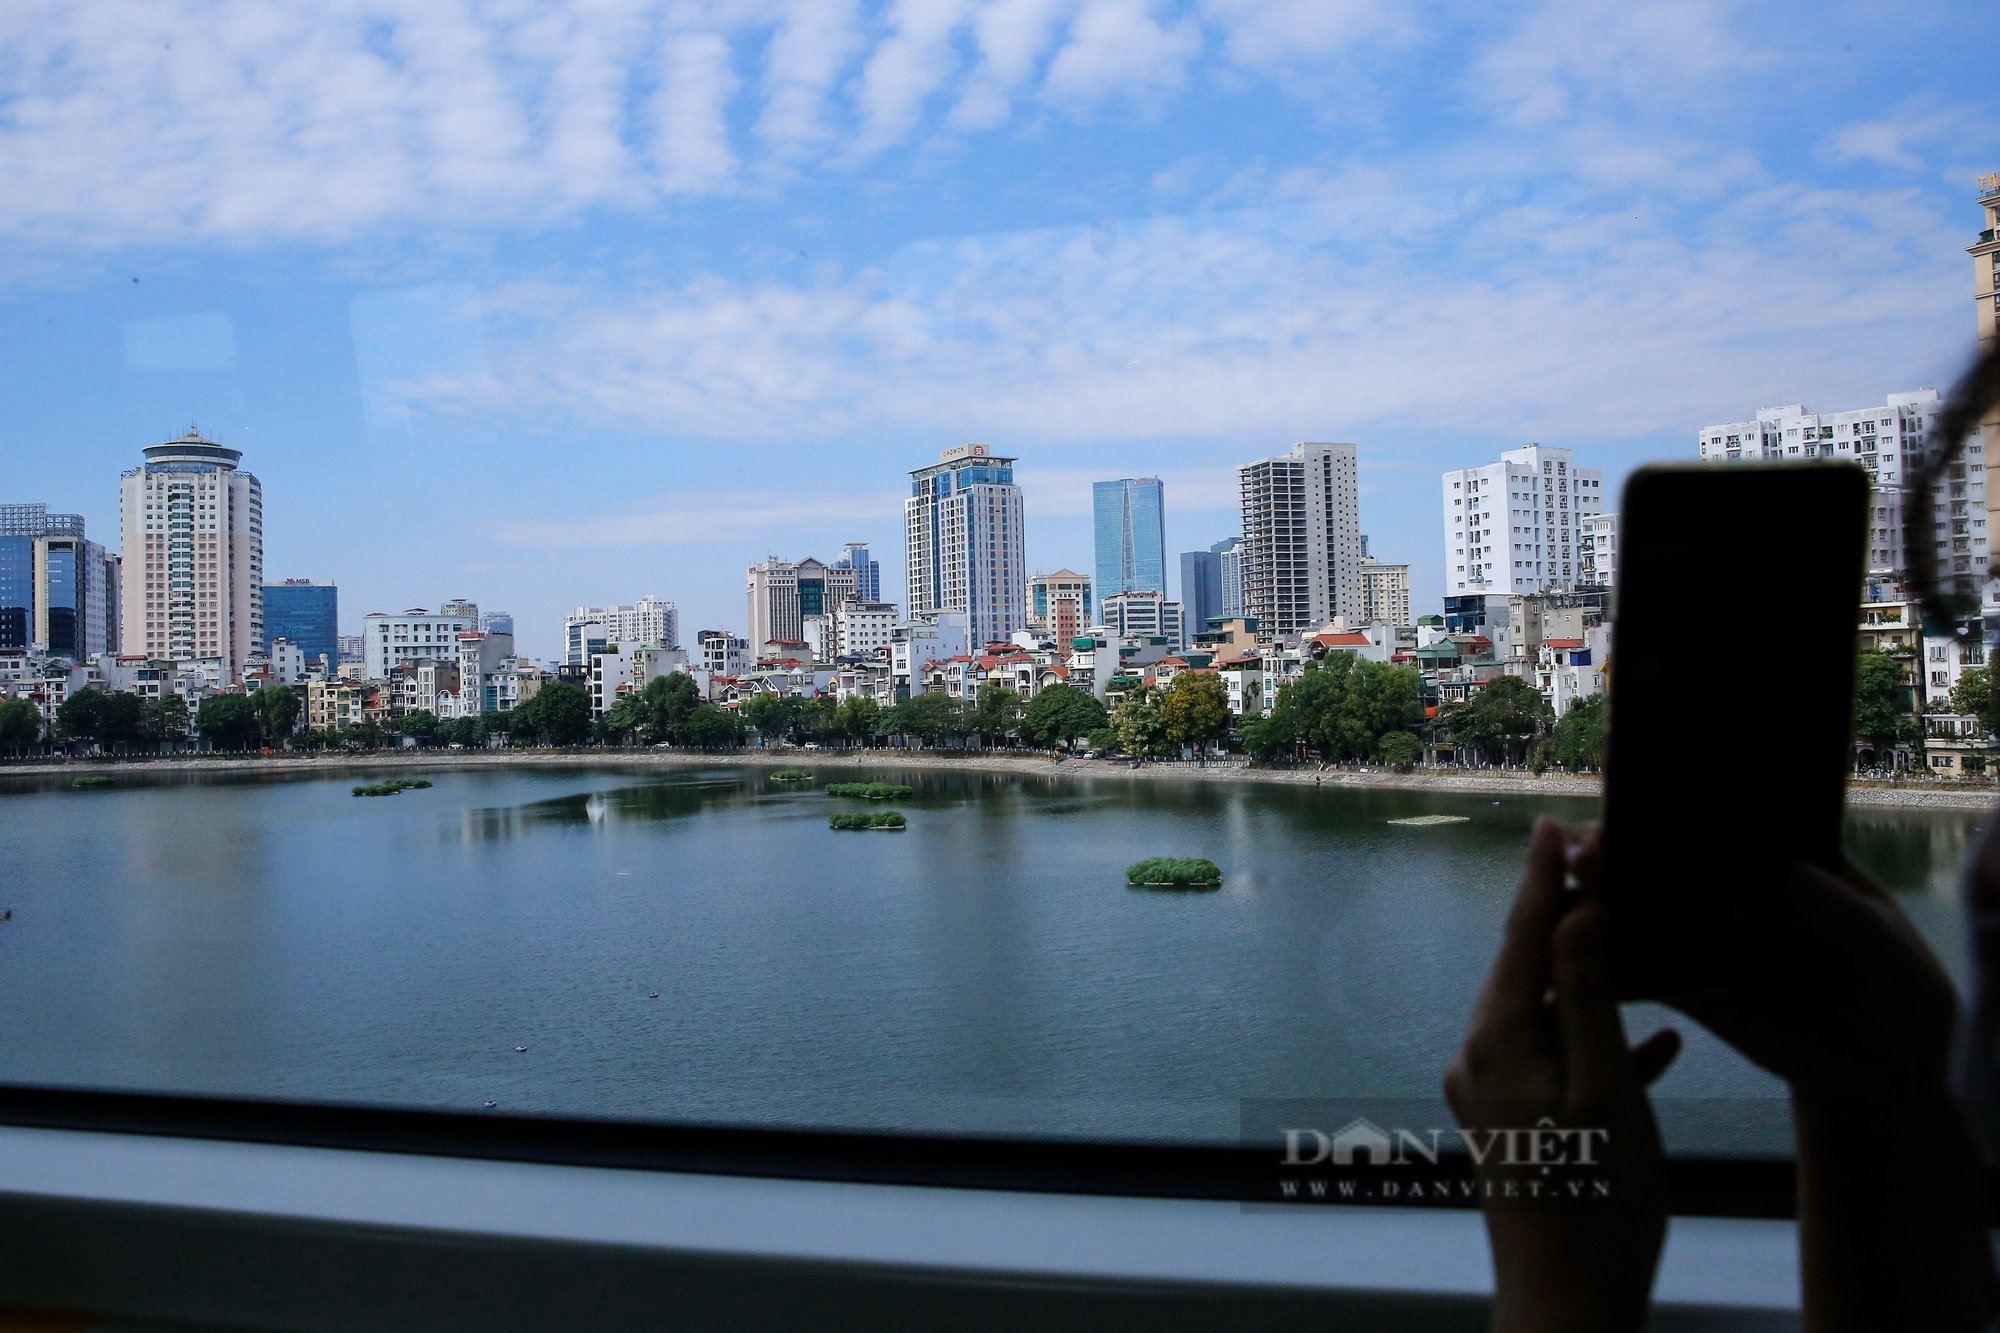 Ngắm nhìn Hà Nội khác lạ qua ô cửa kính tàu đường sắt Cát Linh - Hà Đông  - Ảnh 4.